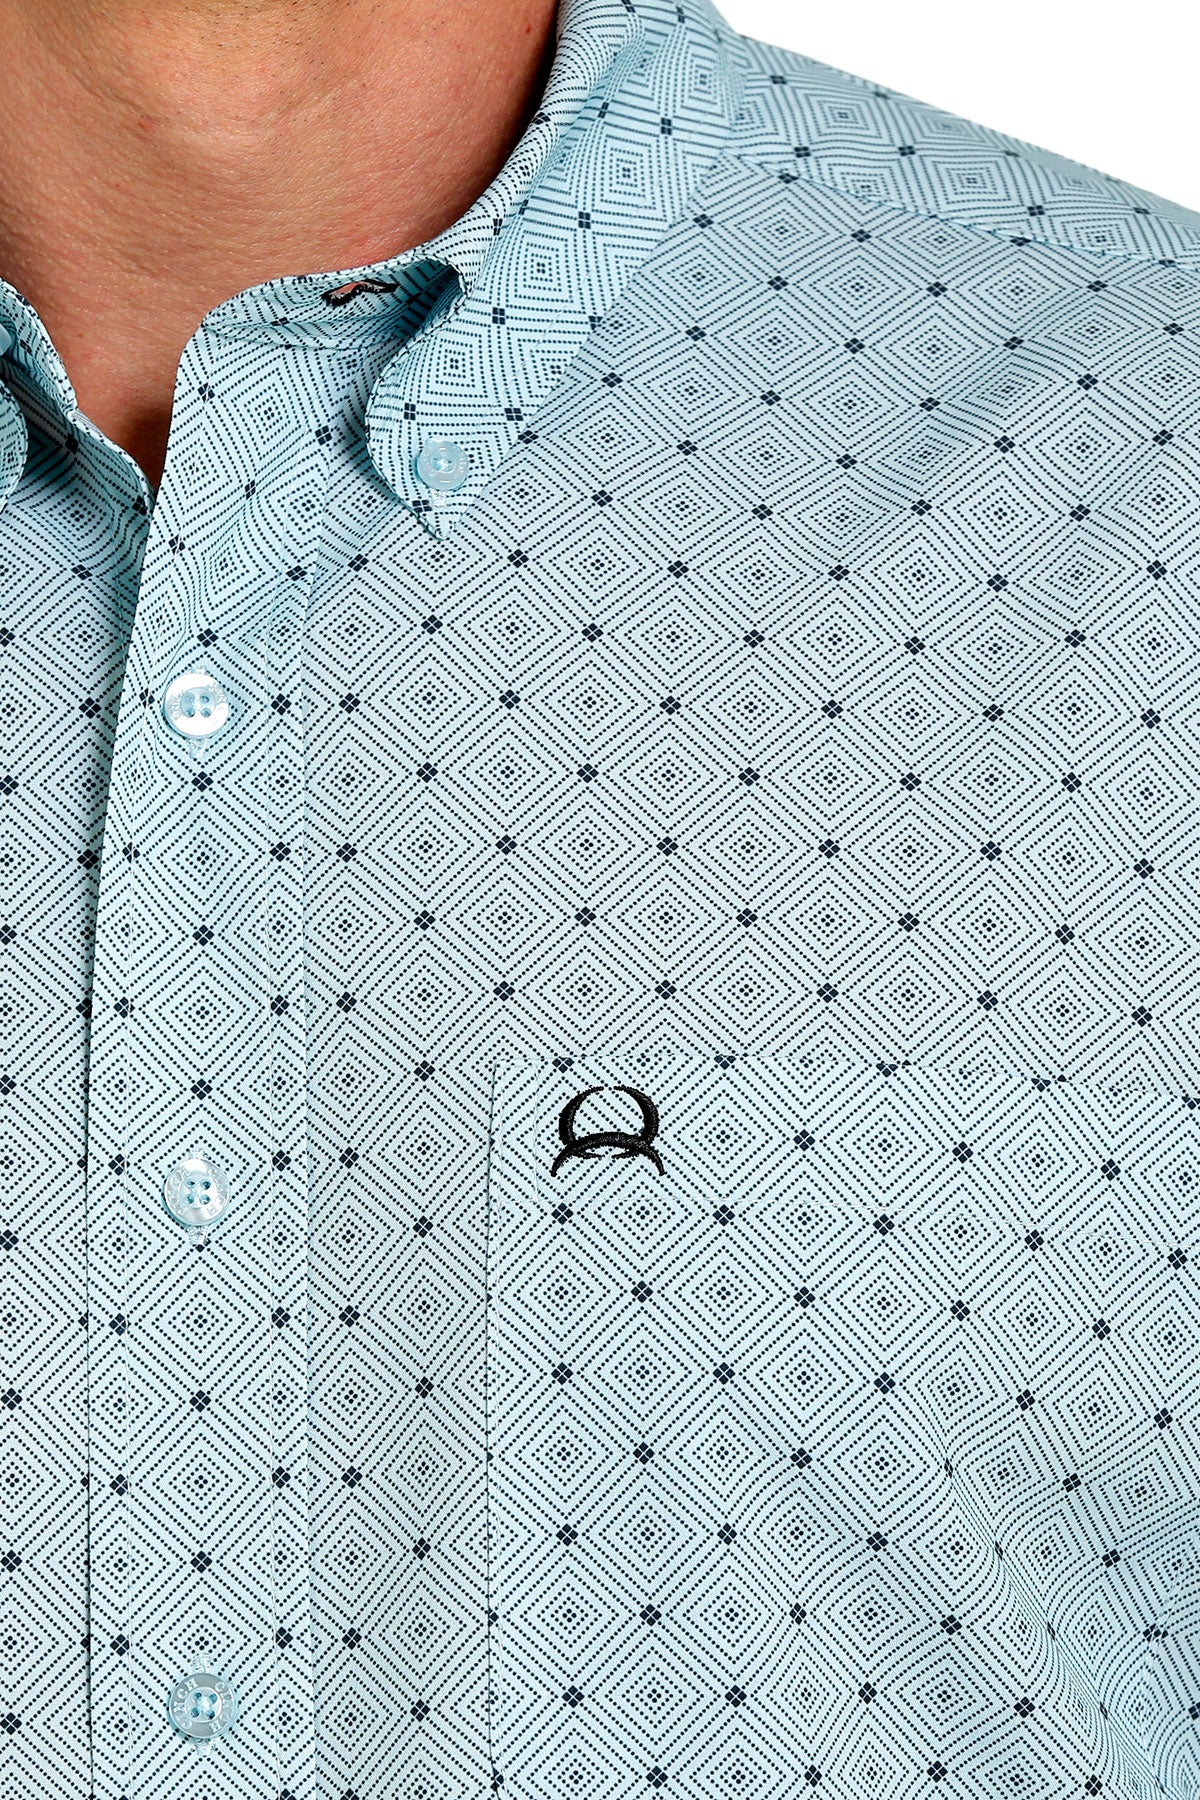 Cinch® Men's Diamond Print Short Sleeve Button Front Western Shirt